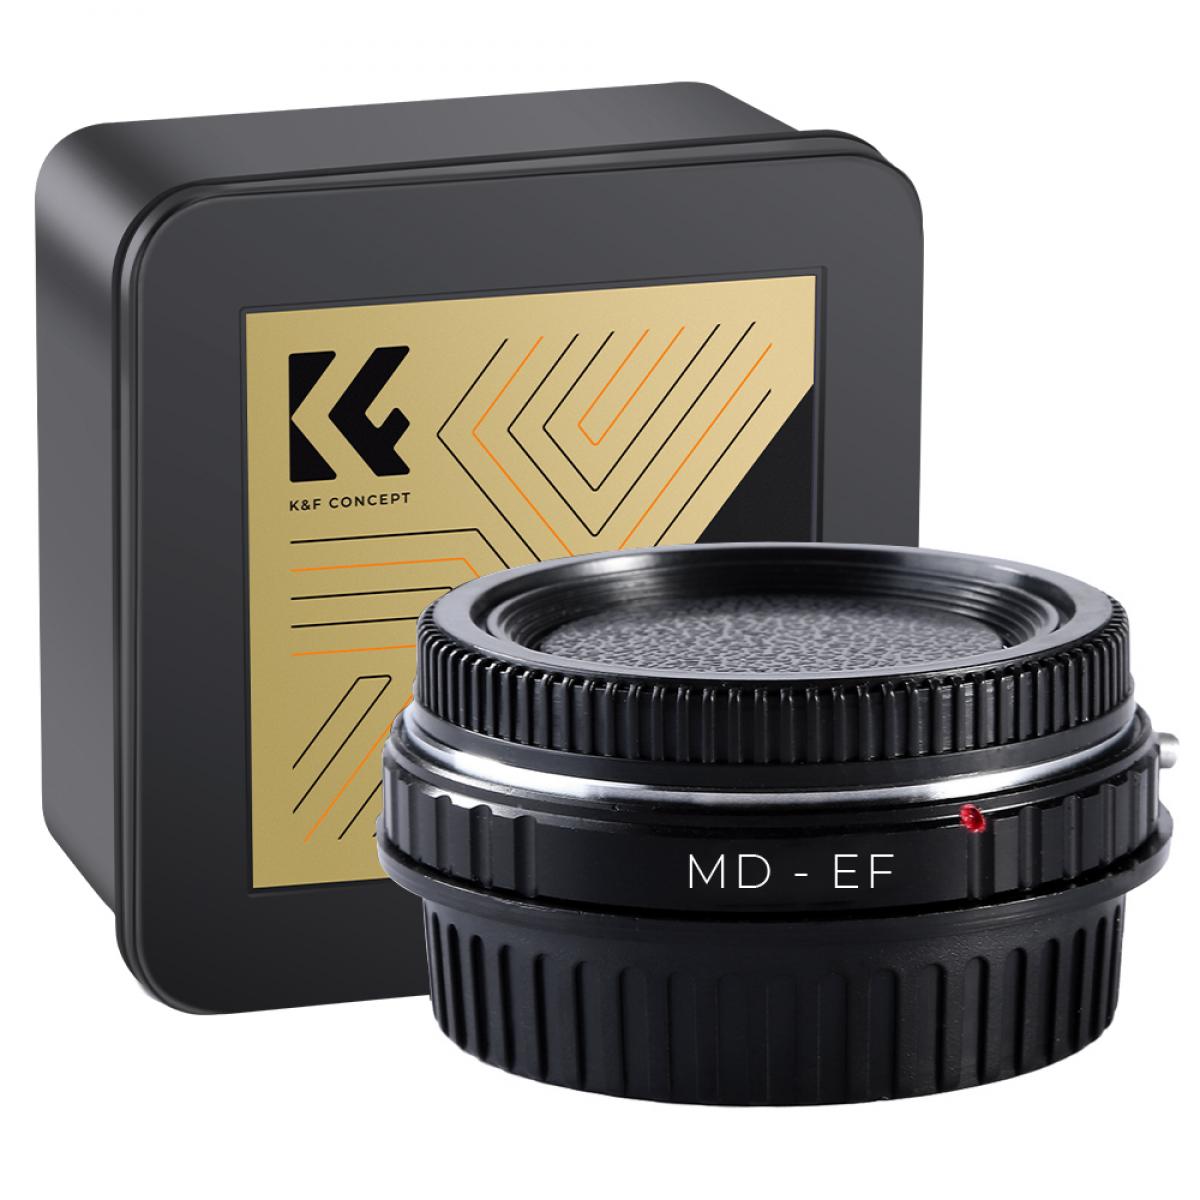 Adattatore per Obiettivi Minolta MD MC a Fotocamere Canon EF